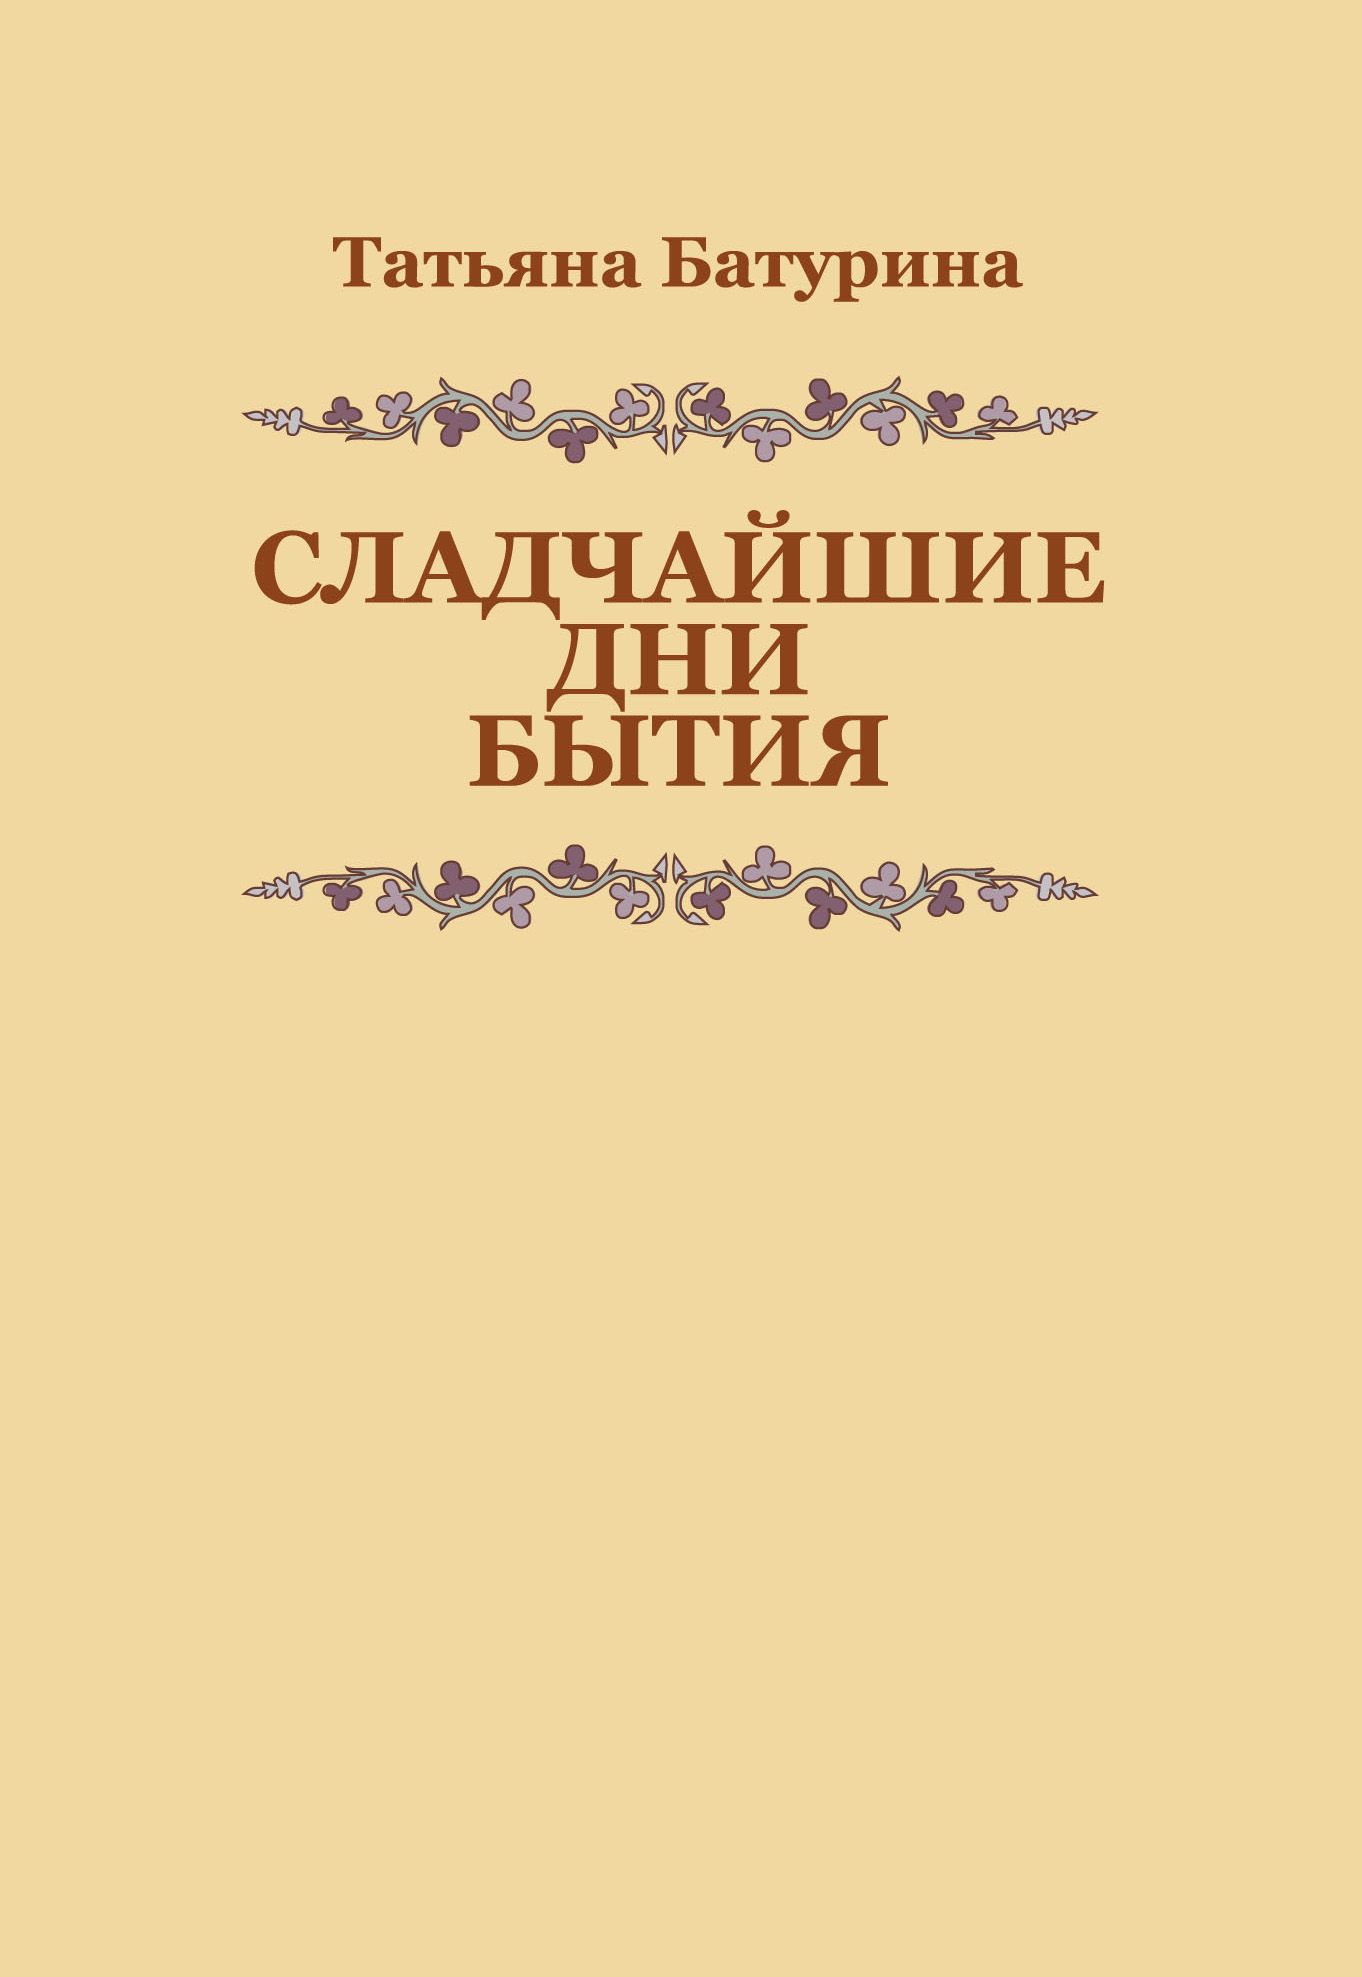 Книга бытия читать на русском. Книги Батуриной Татьяны.